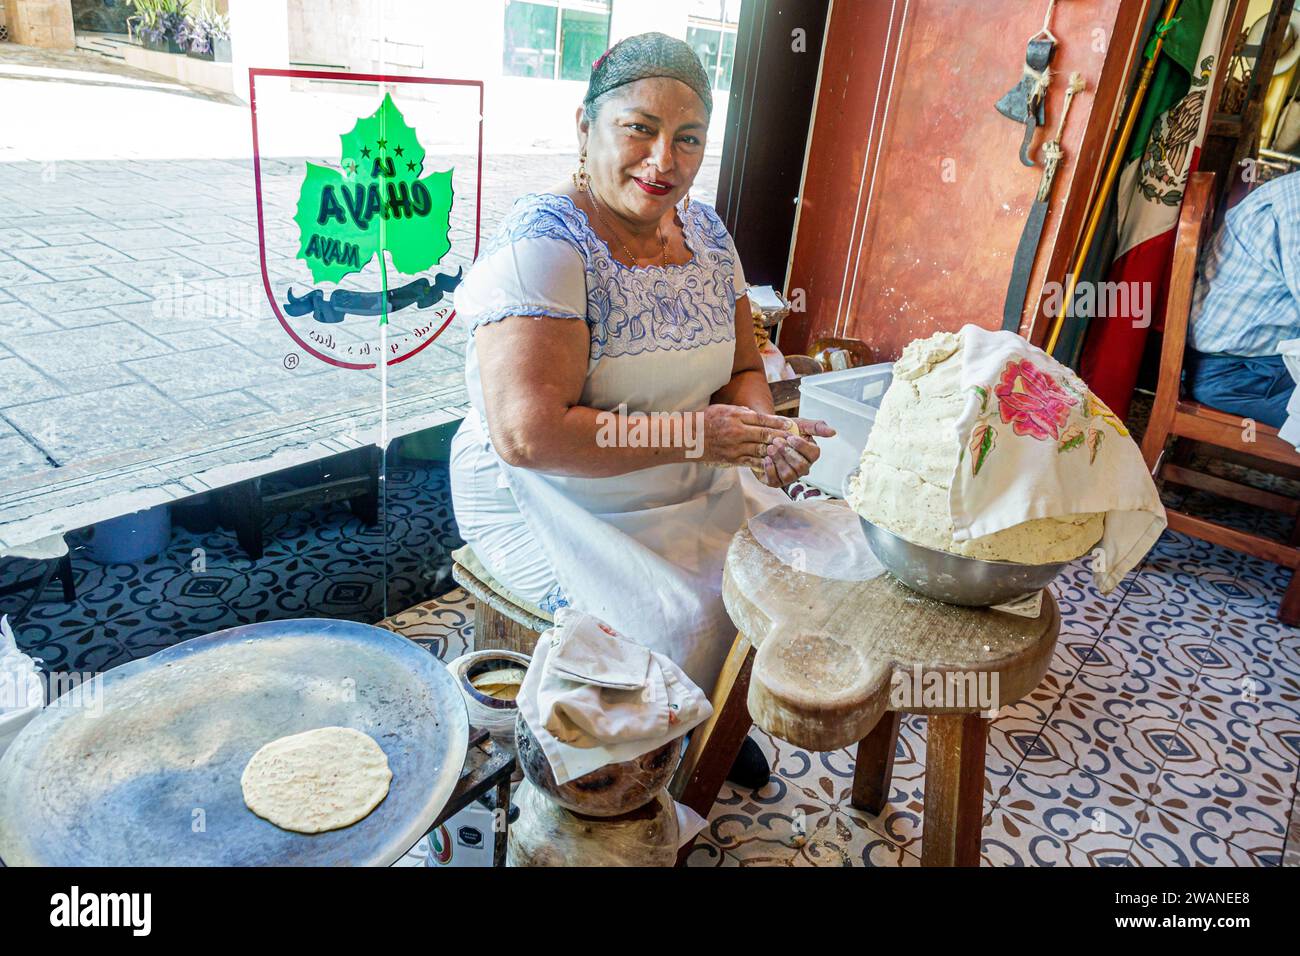 Merida Mexique, centro historico quartier historique central, démontrant la fabrication de tortillas, la Chaya Maya, Yucateca nourriture, femme femme femme dame femelle, adulte, resi Banque D'Images